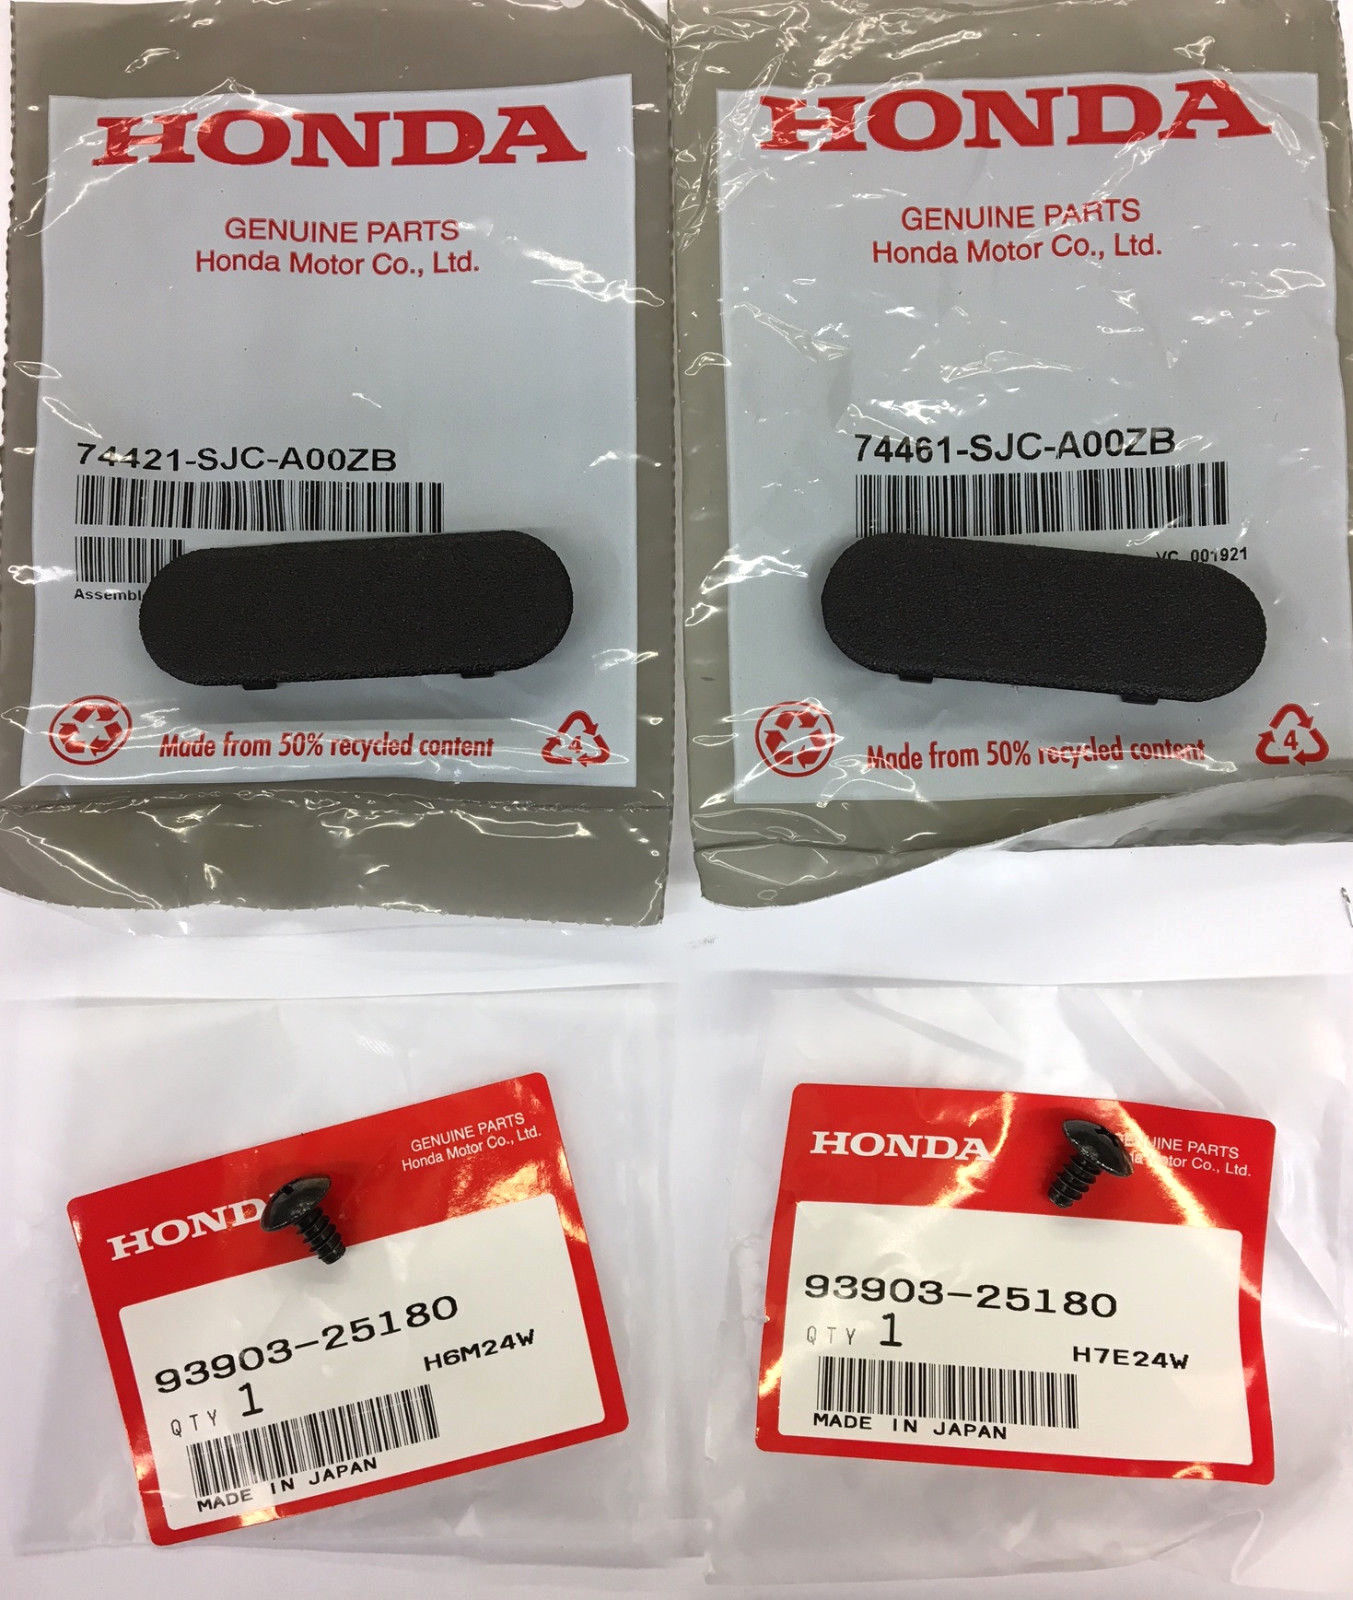 Genuine OEM Honda Ridgeline Bed Rail Cap Cover Set w/ Screws 06-14 Pair Caps